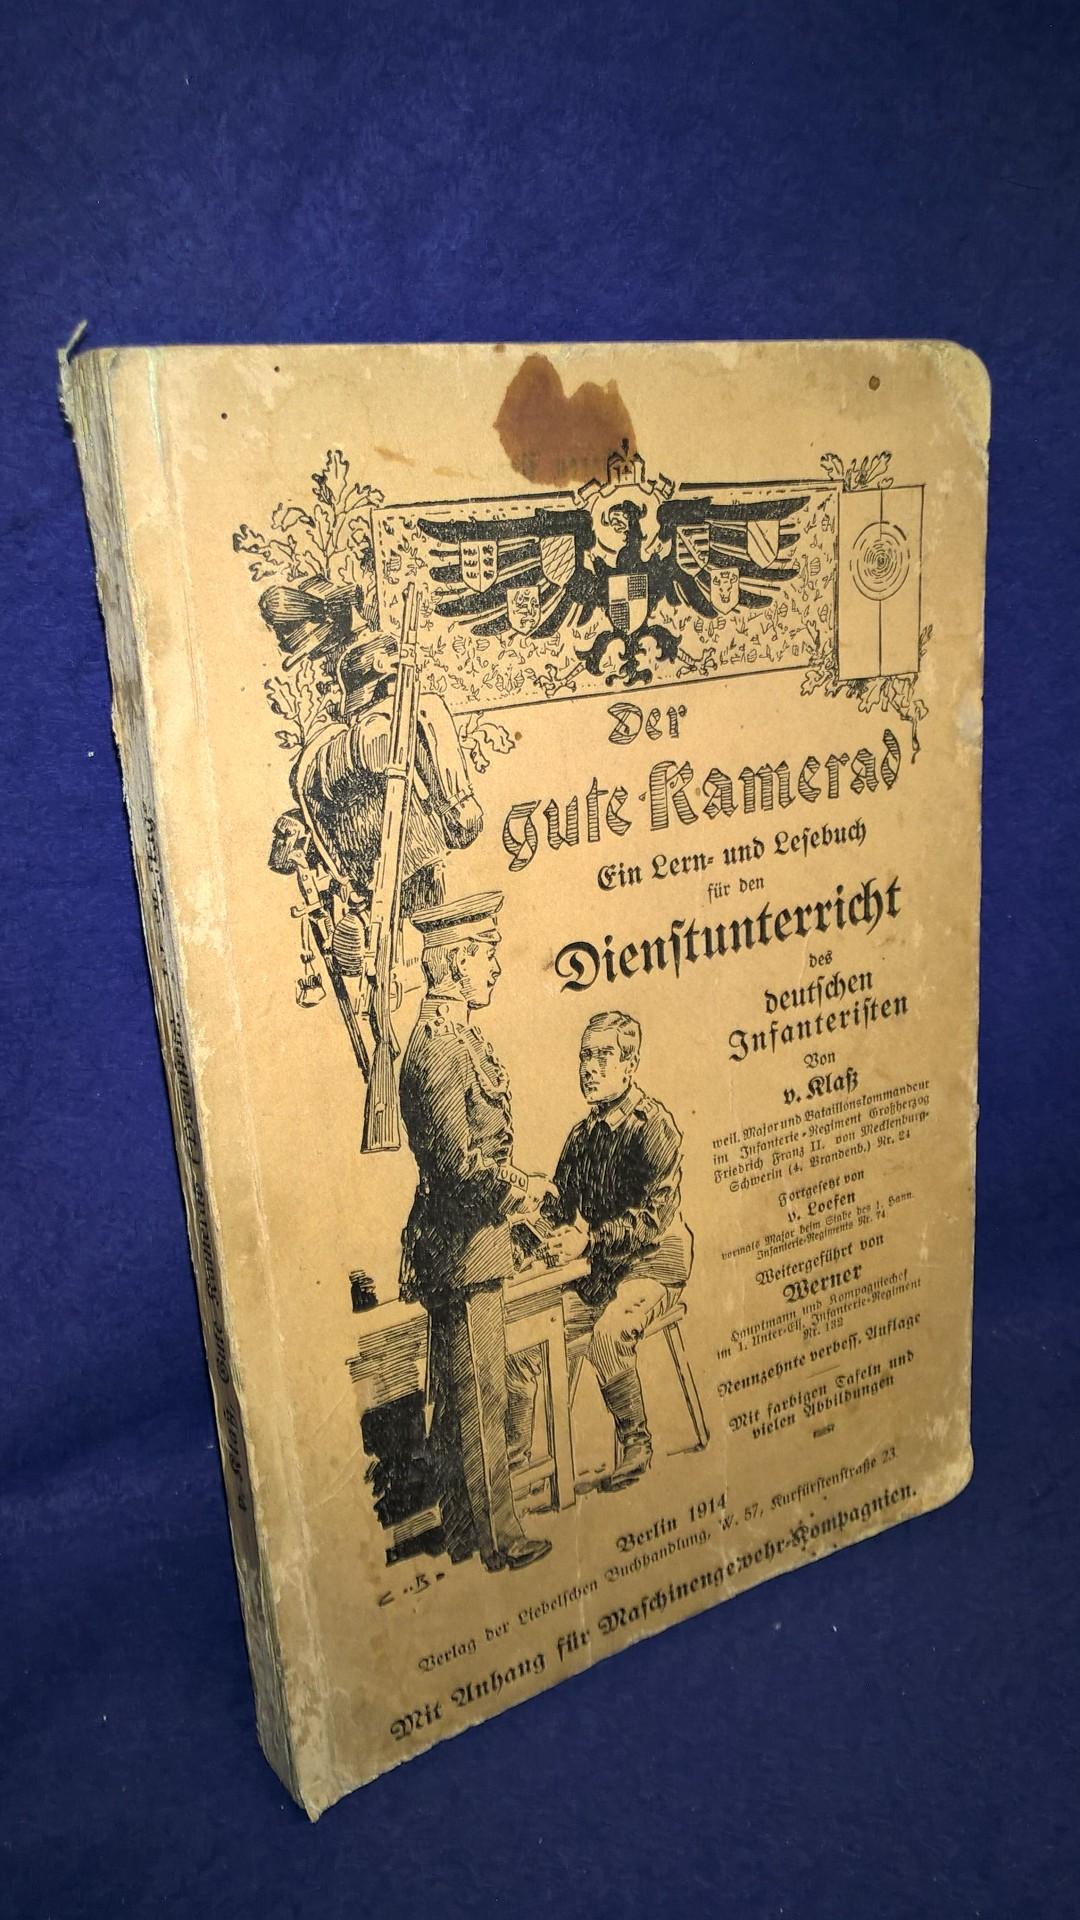 Der gute Kamerad. Ein Lern- und Lesebuch für den Dienstunterricht des deutschen Infanteristen. Jahrgang 1914.